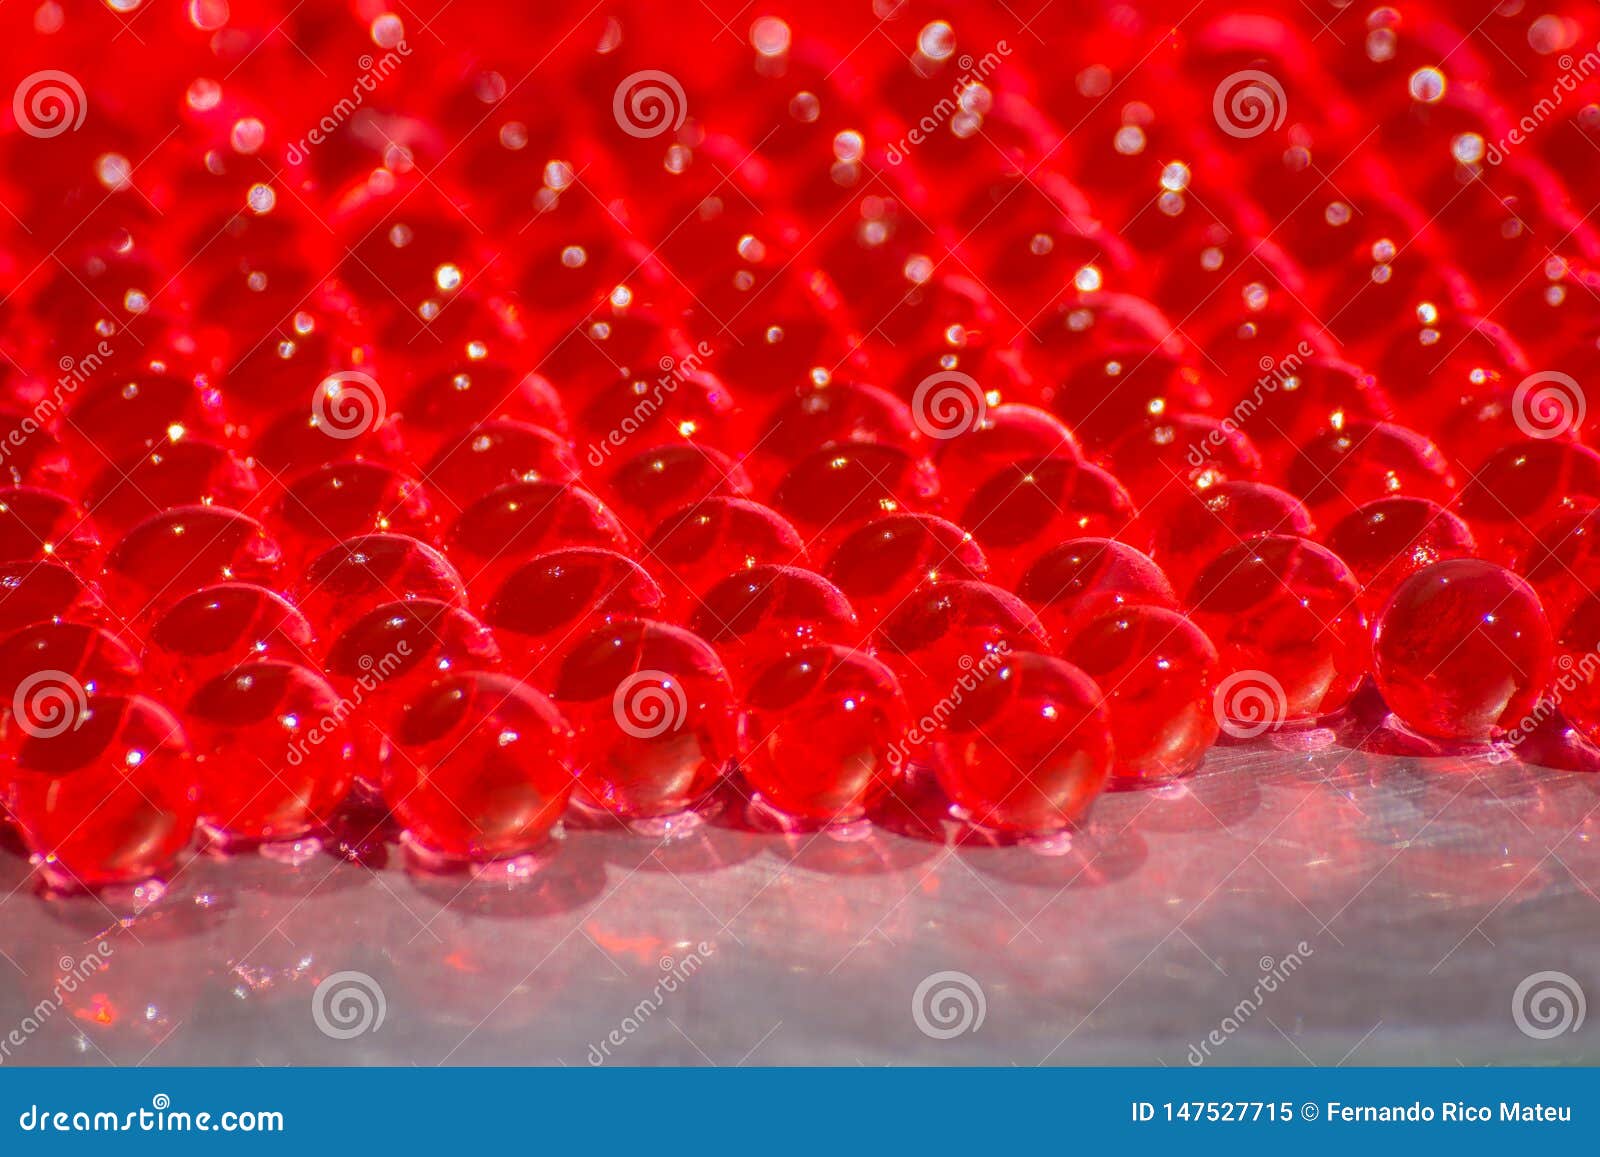 Water Red Gel Balls with Bokeh. Polymer Gel. Silica Gel. Balls of Red  Hydrogel. Crystal Liquid Ball with Reflection Stockbild - Bild von  luftblase, feucht: 147527715